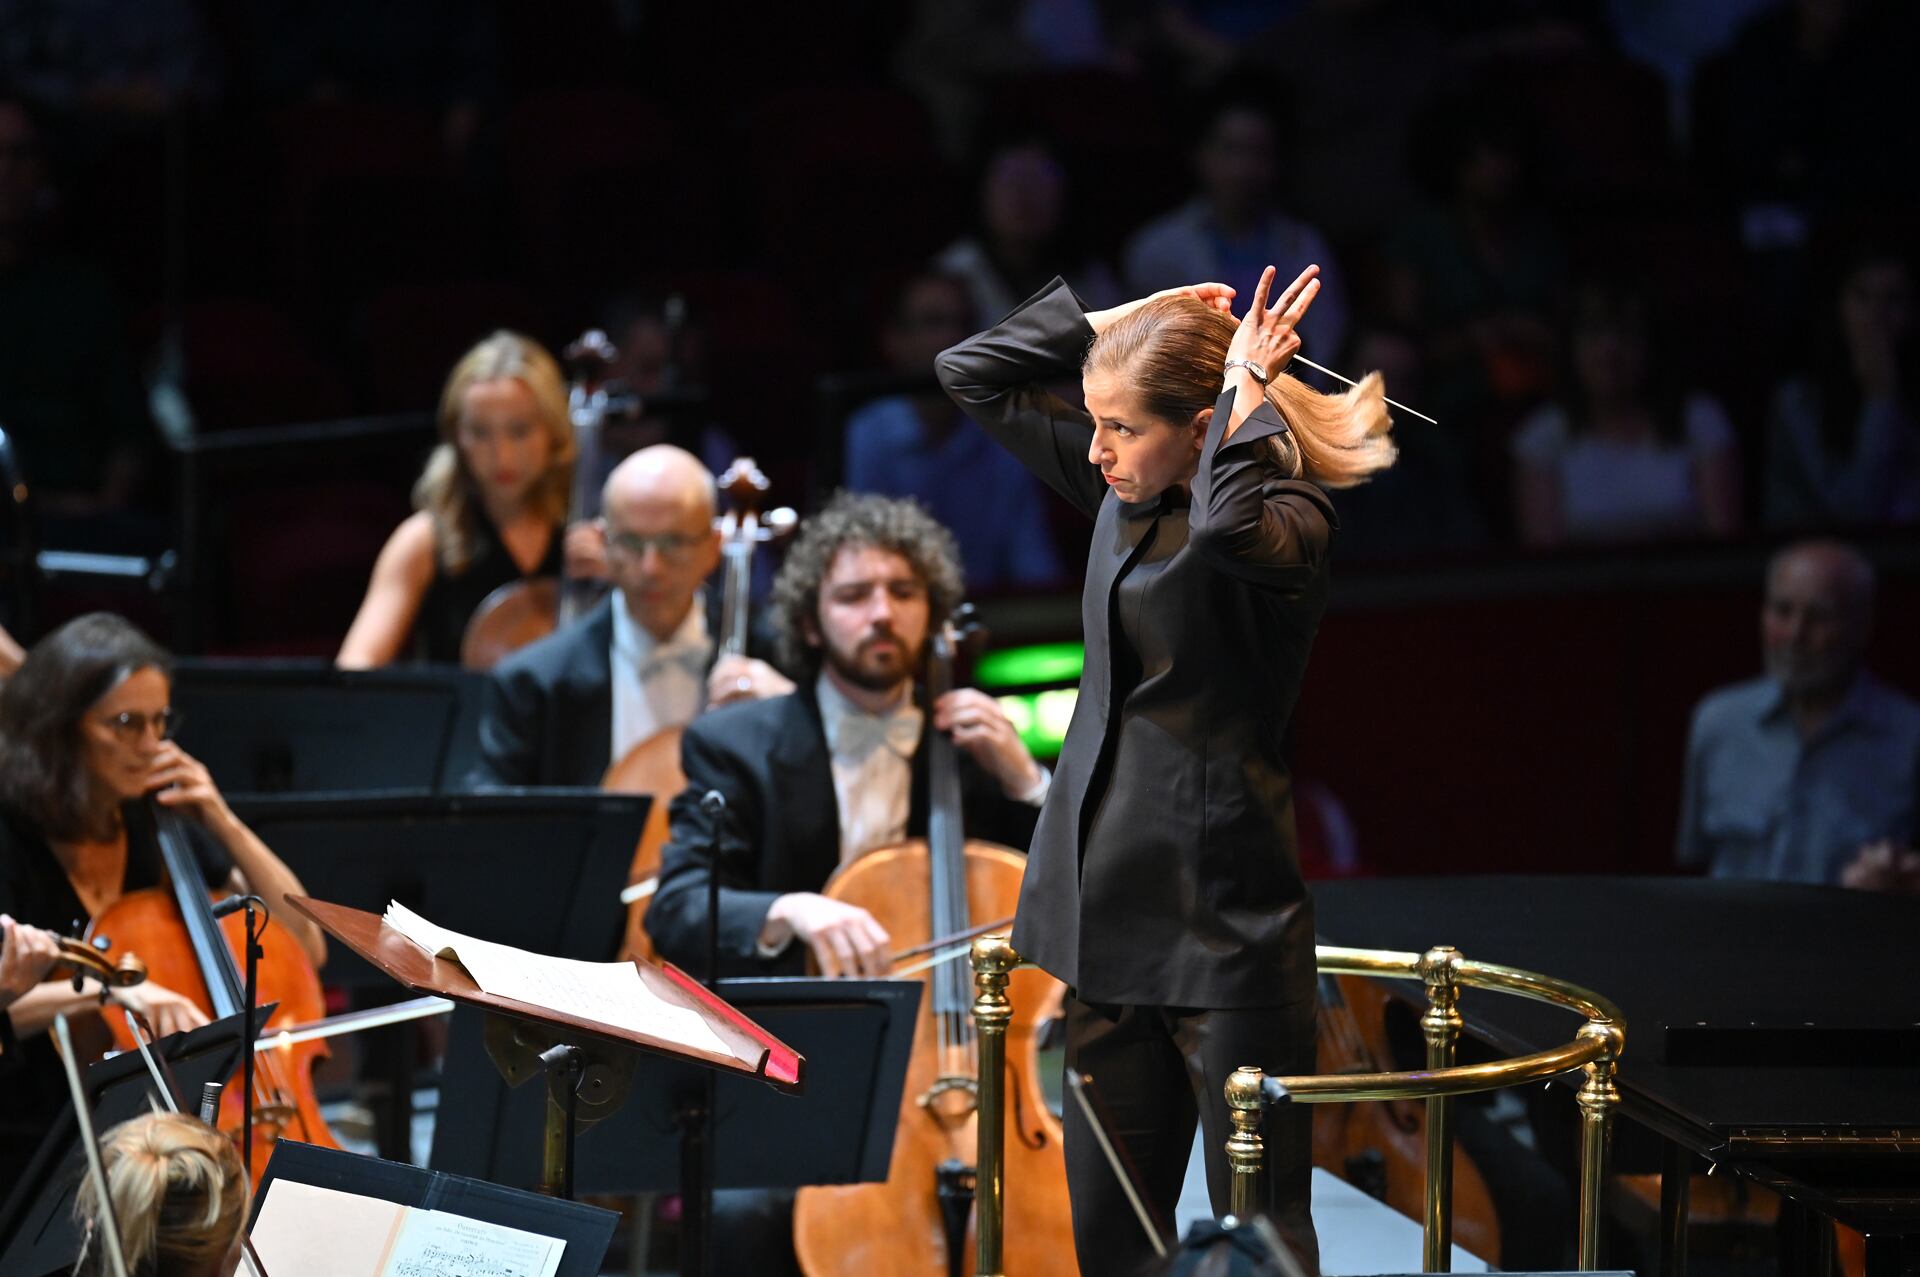 La directora Karina Canellakis y algunos integrantes de la BBC Symphony durante la interpretación de ‘Las criaturas de Prometeo’ de Beethoven, el pasado lunes en Londres.